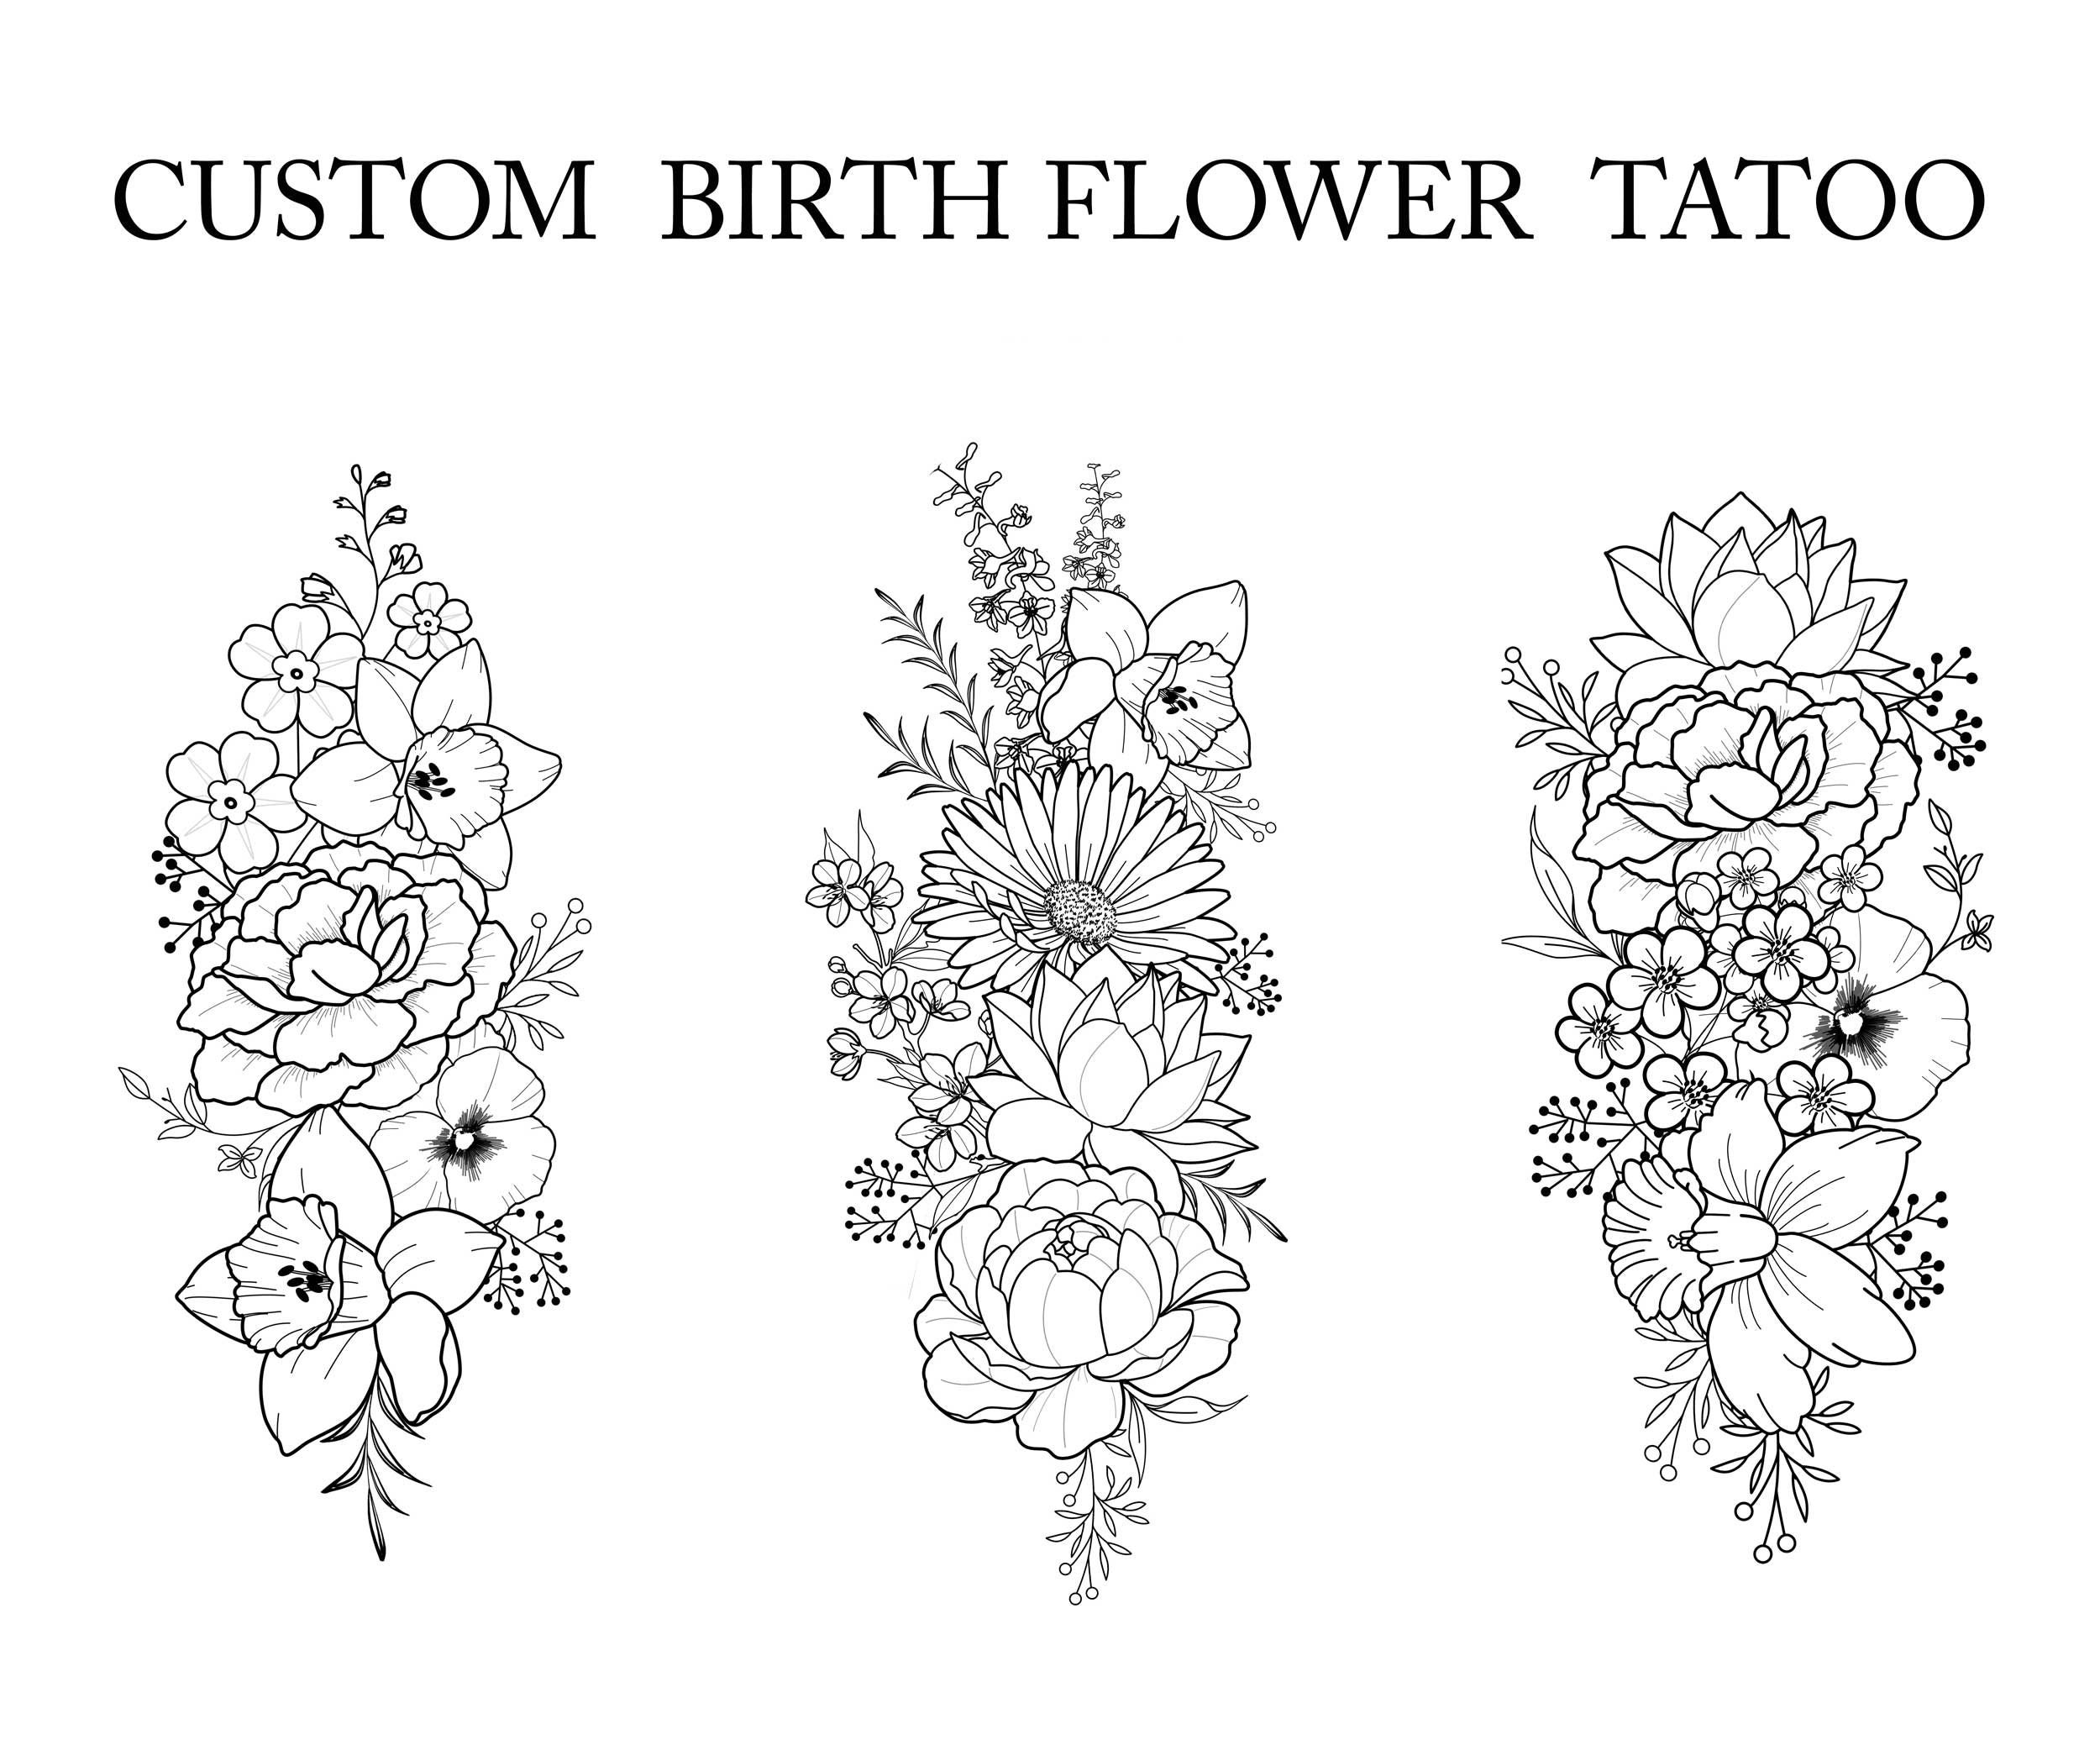 Flower-dragon-shoulder-tattoo-r by NeckBoneInkTattoo on DeviantArt